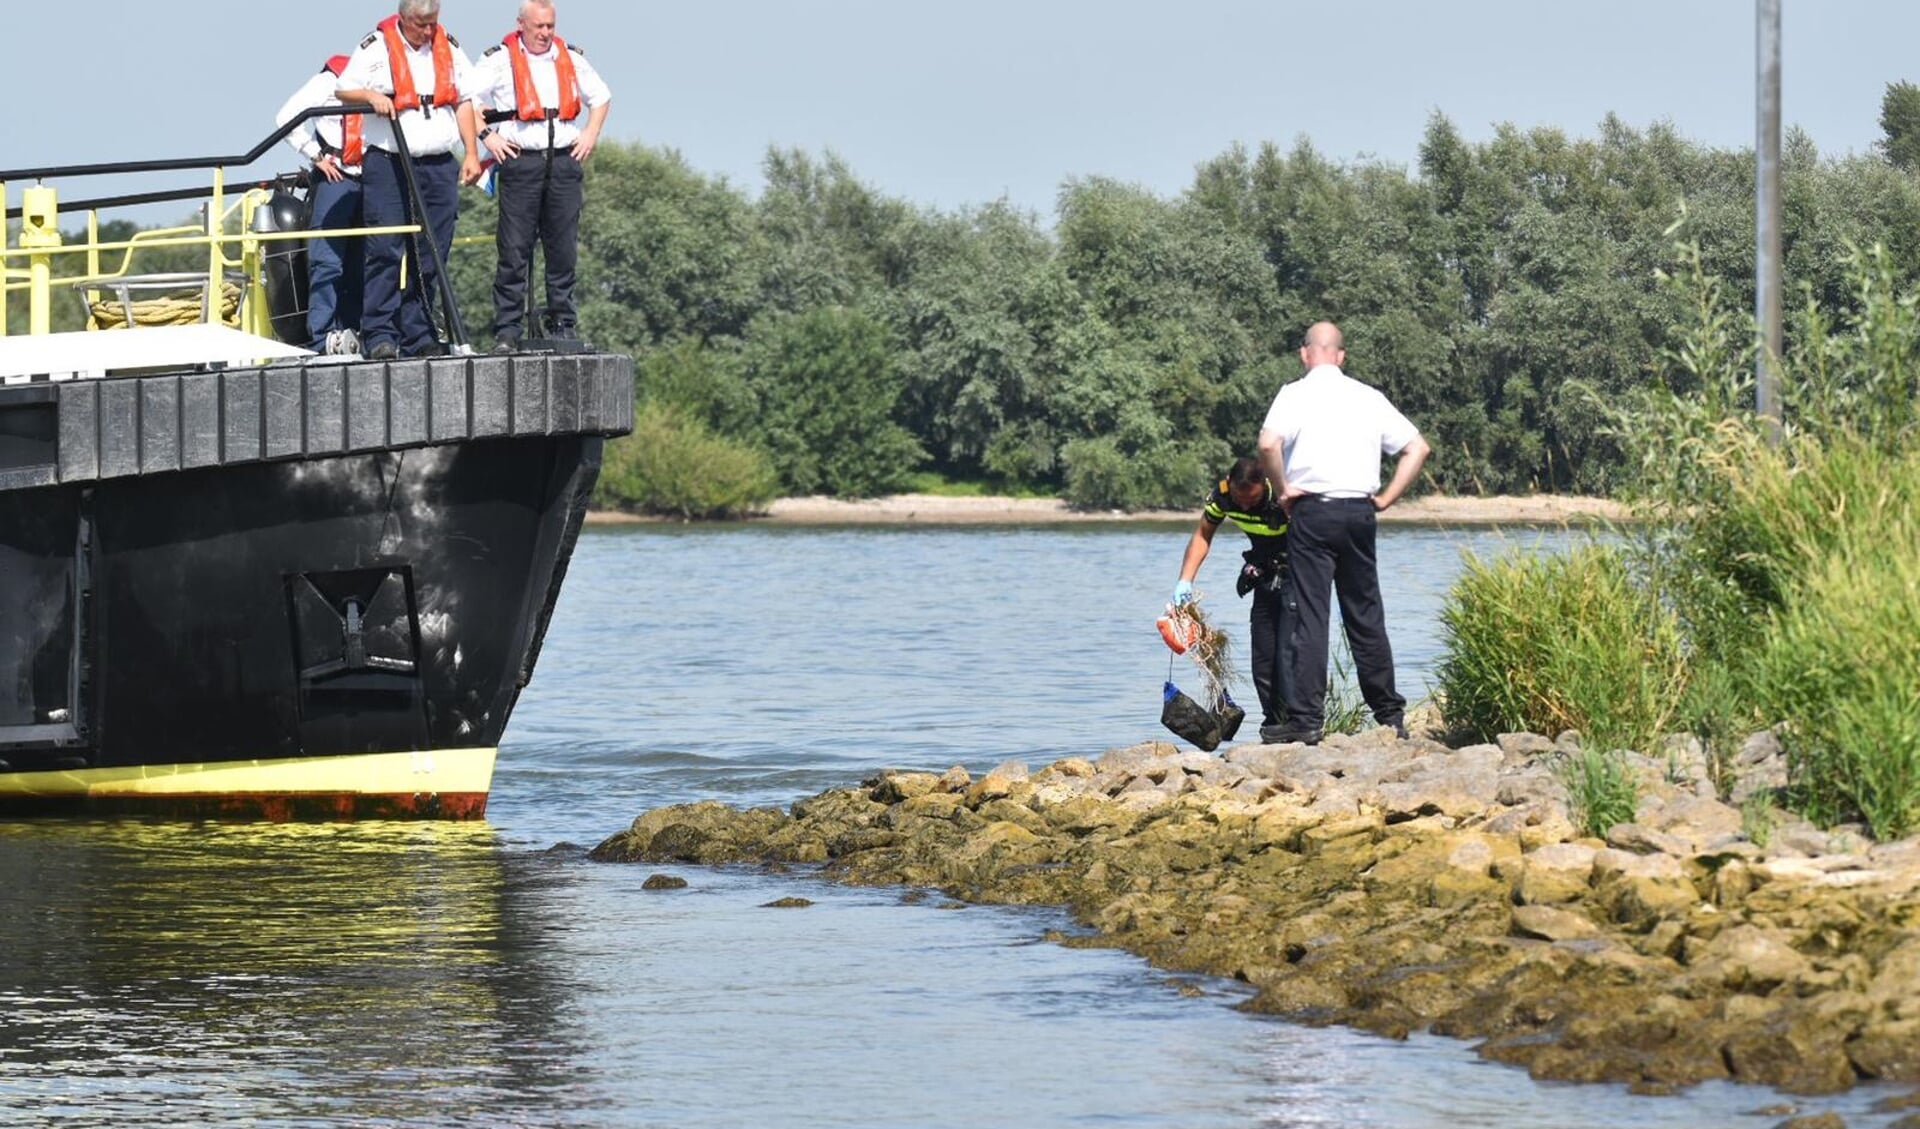 • Politie en Rijkswaterstaat werden ingeschakeld voor een verdachte situatie op de Waal bij Brakel.